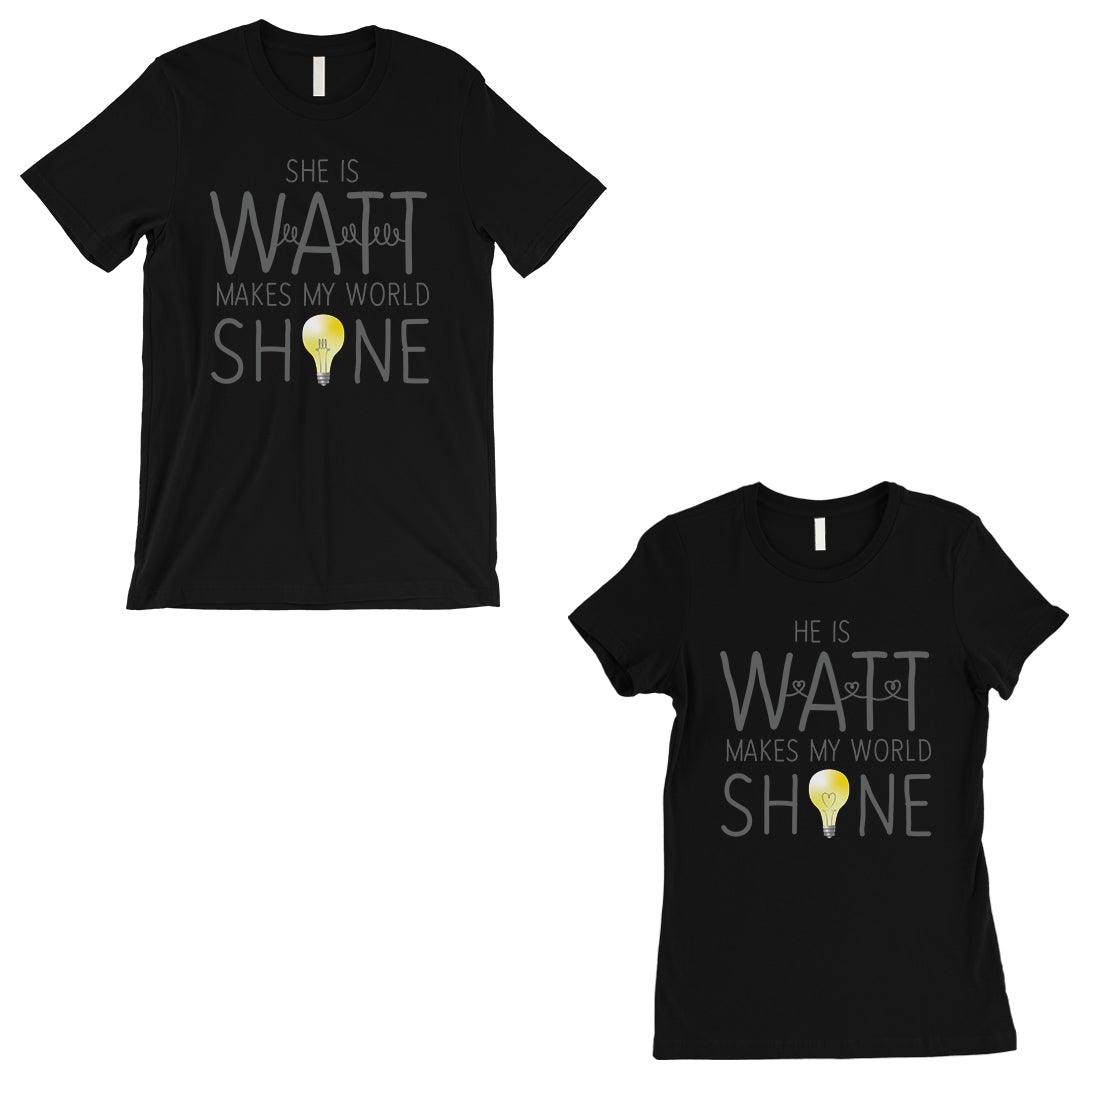 Watt World Shine Light Matching Couple T-Shirts Gift Black